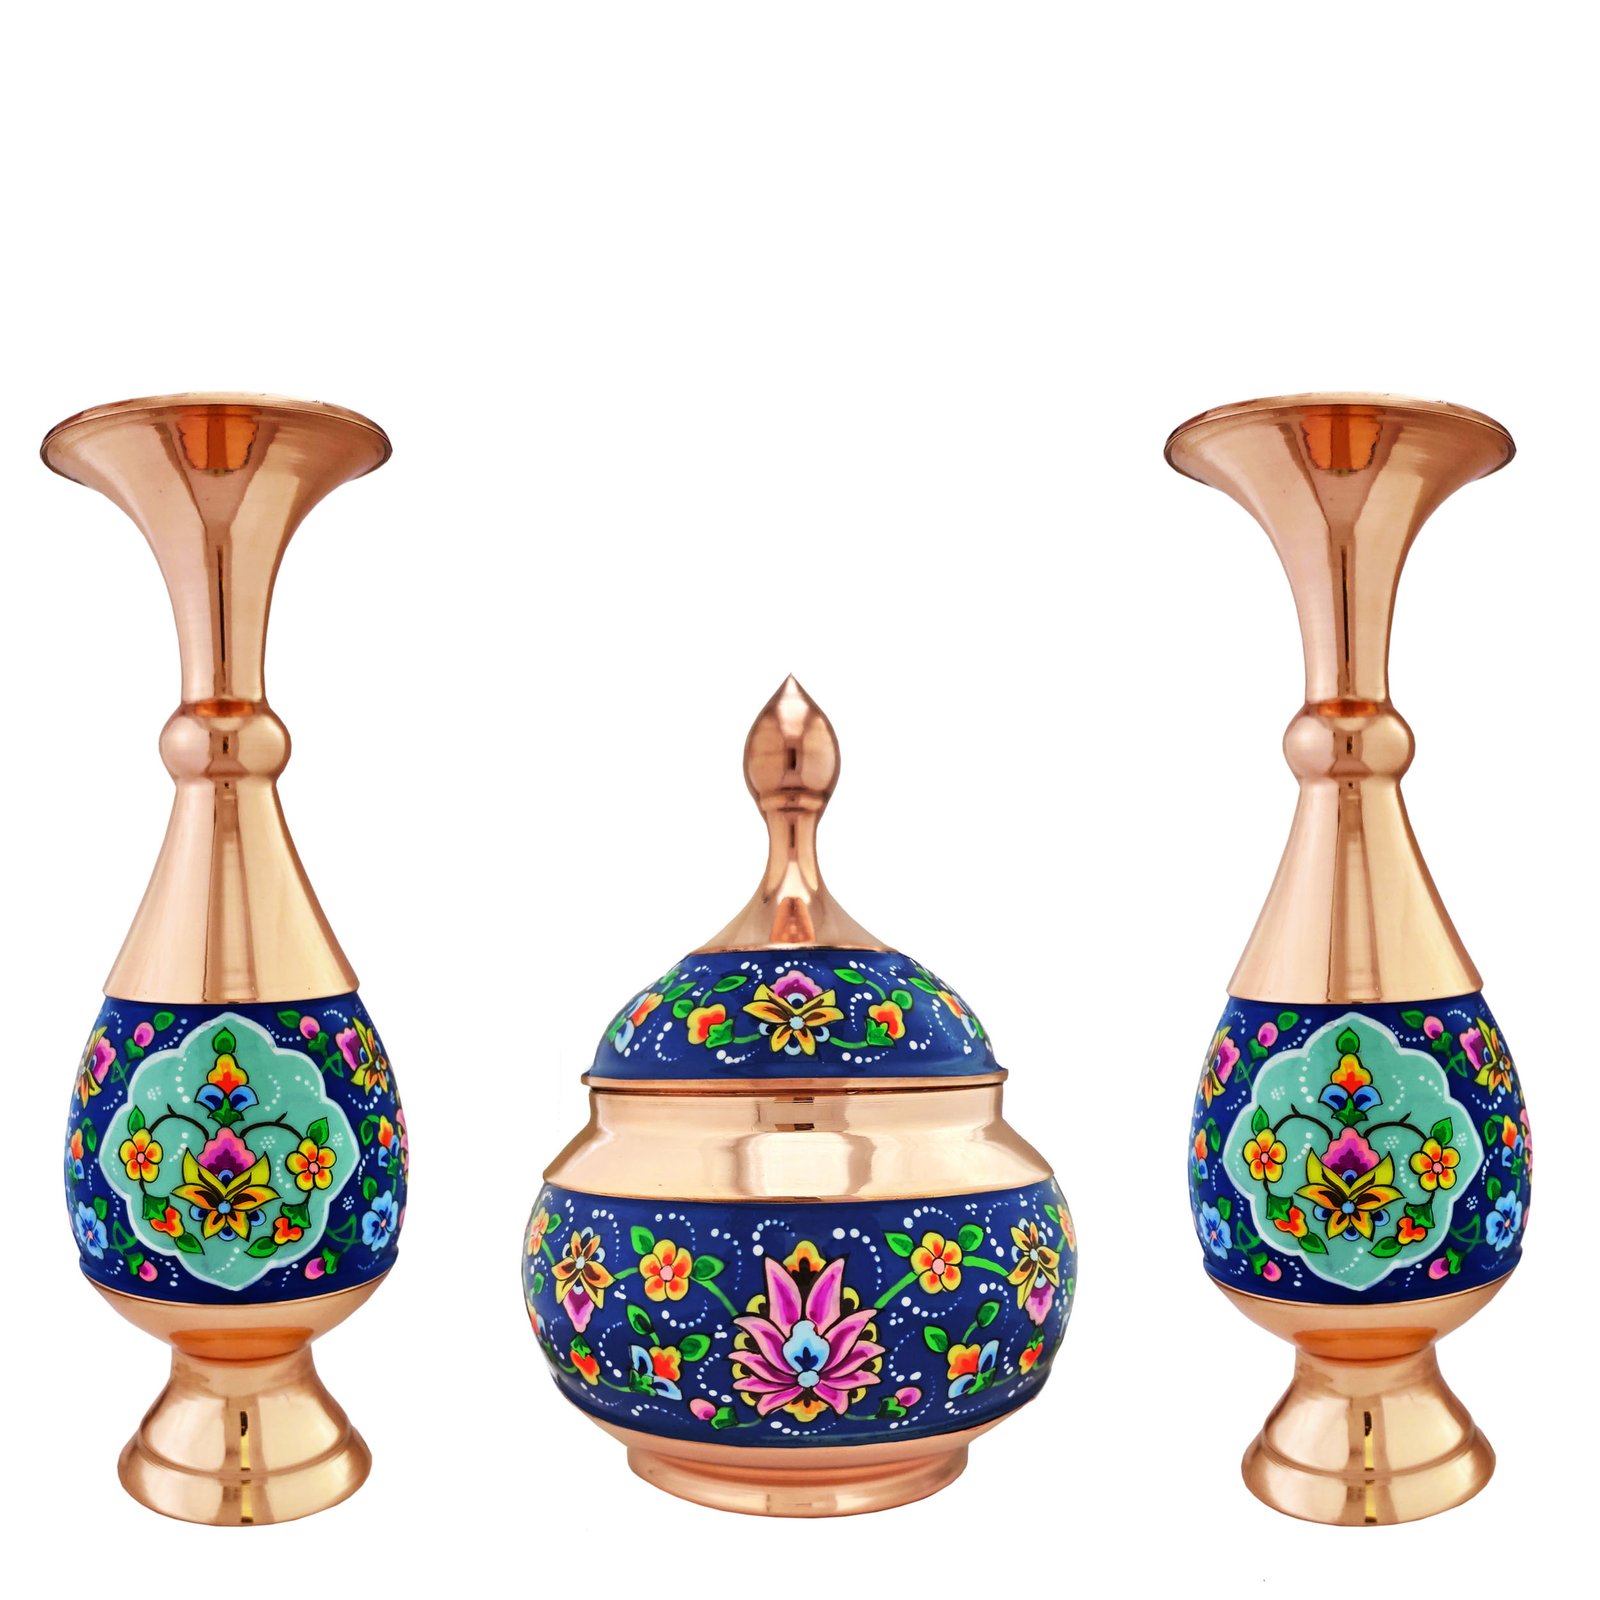 Enamel Handicraft copper pot and container model pardaz code st20 collection 3 pcs,blue enamel,handicrafts,handicrafts dishes,dish handicraft